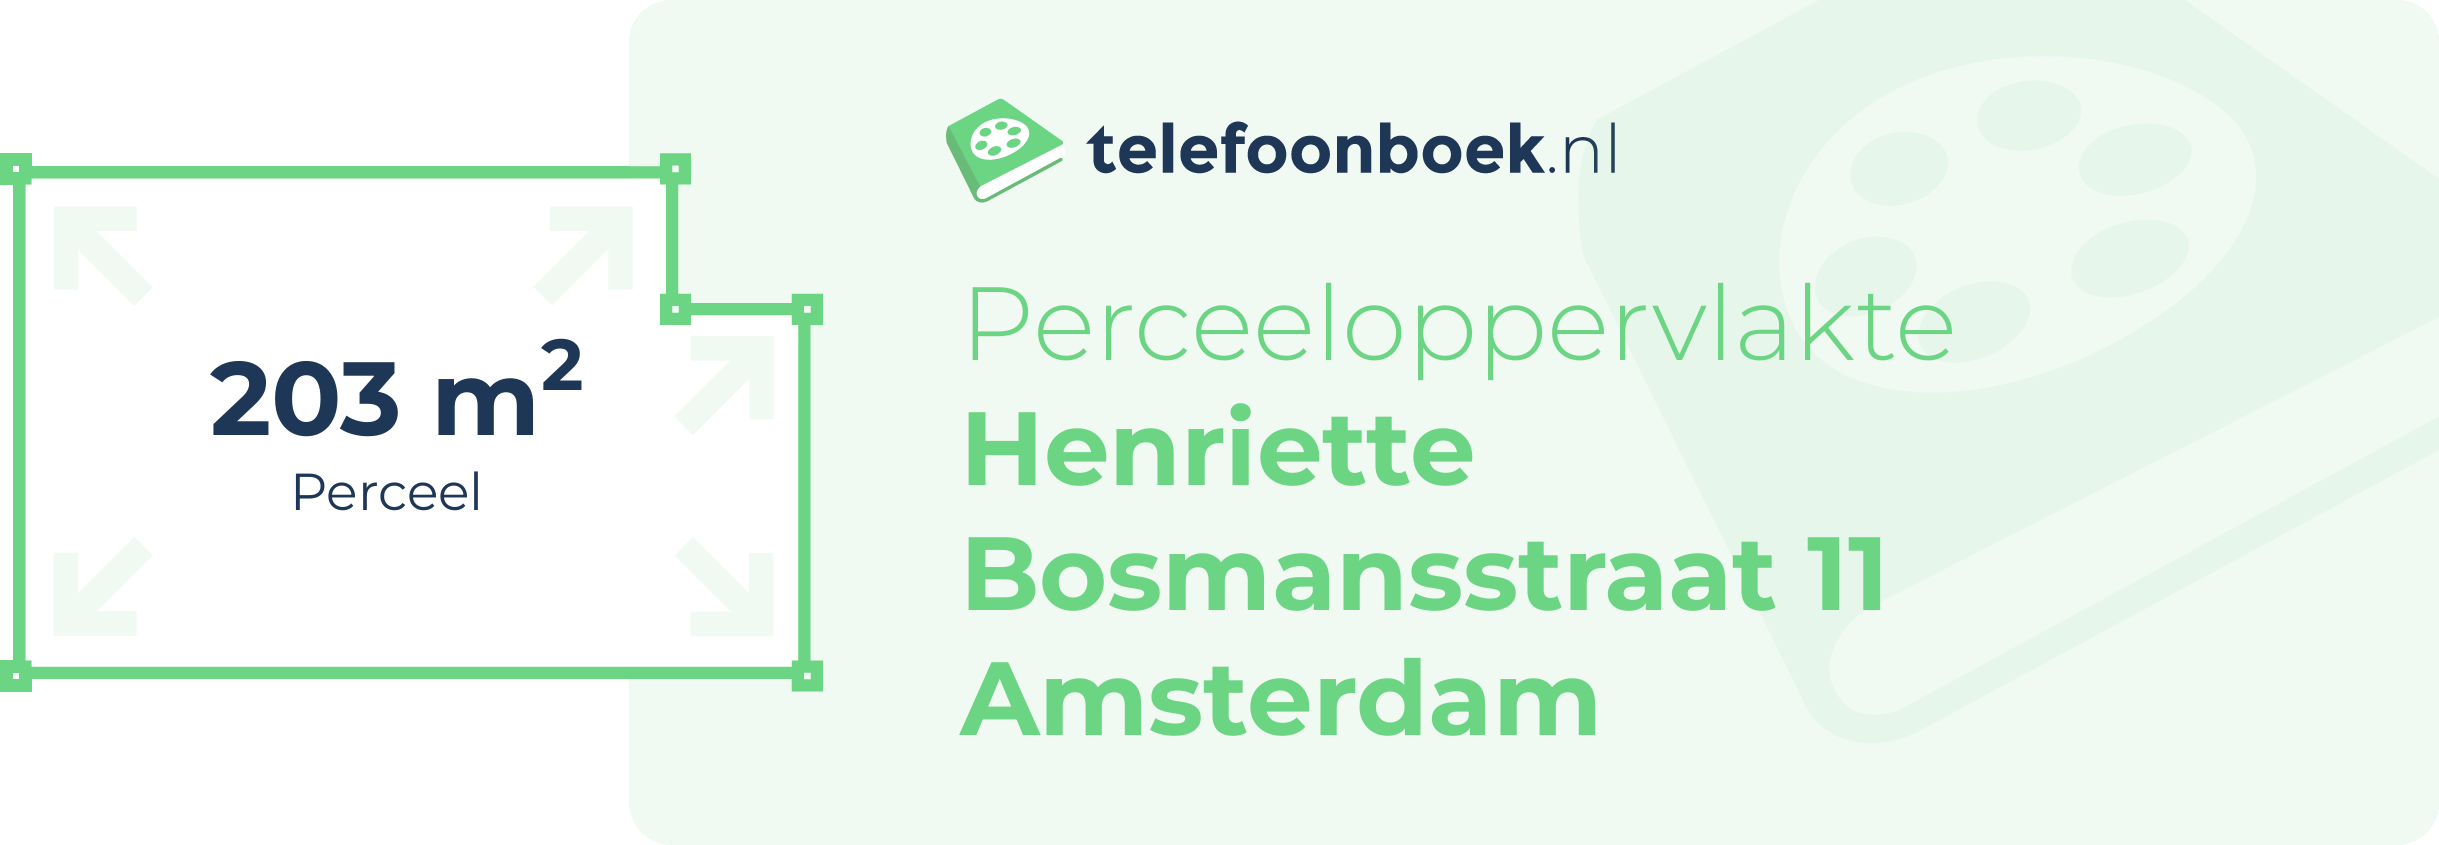 Perceeloppervlakte Henriette Bosmansstraat 11 Amsterdam